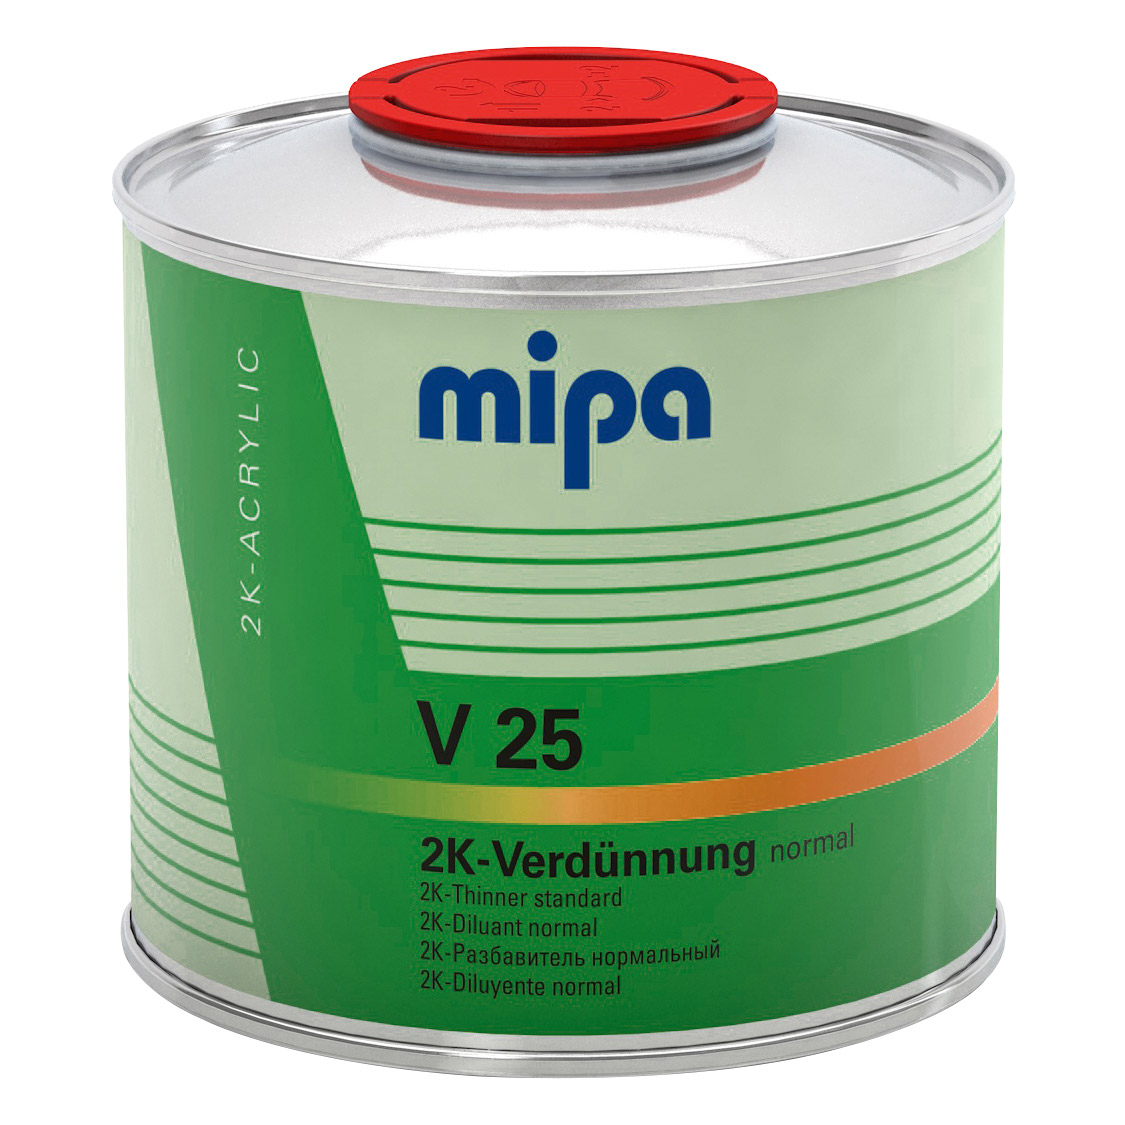 Mipa 2K-Verdünnung normal V 25, 0,5l